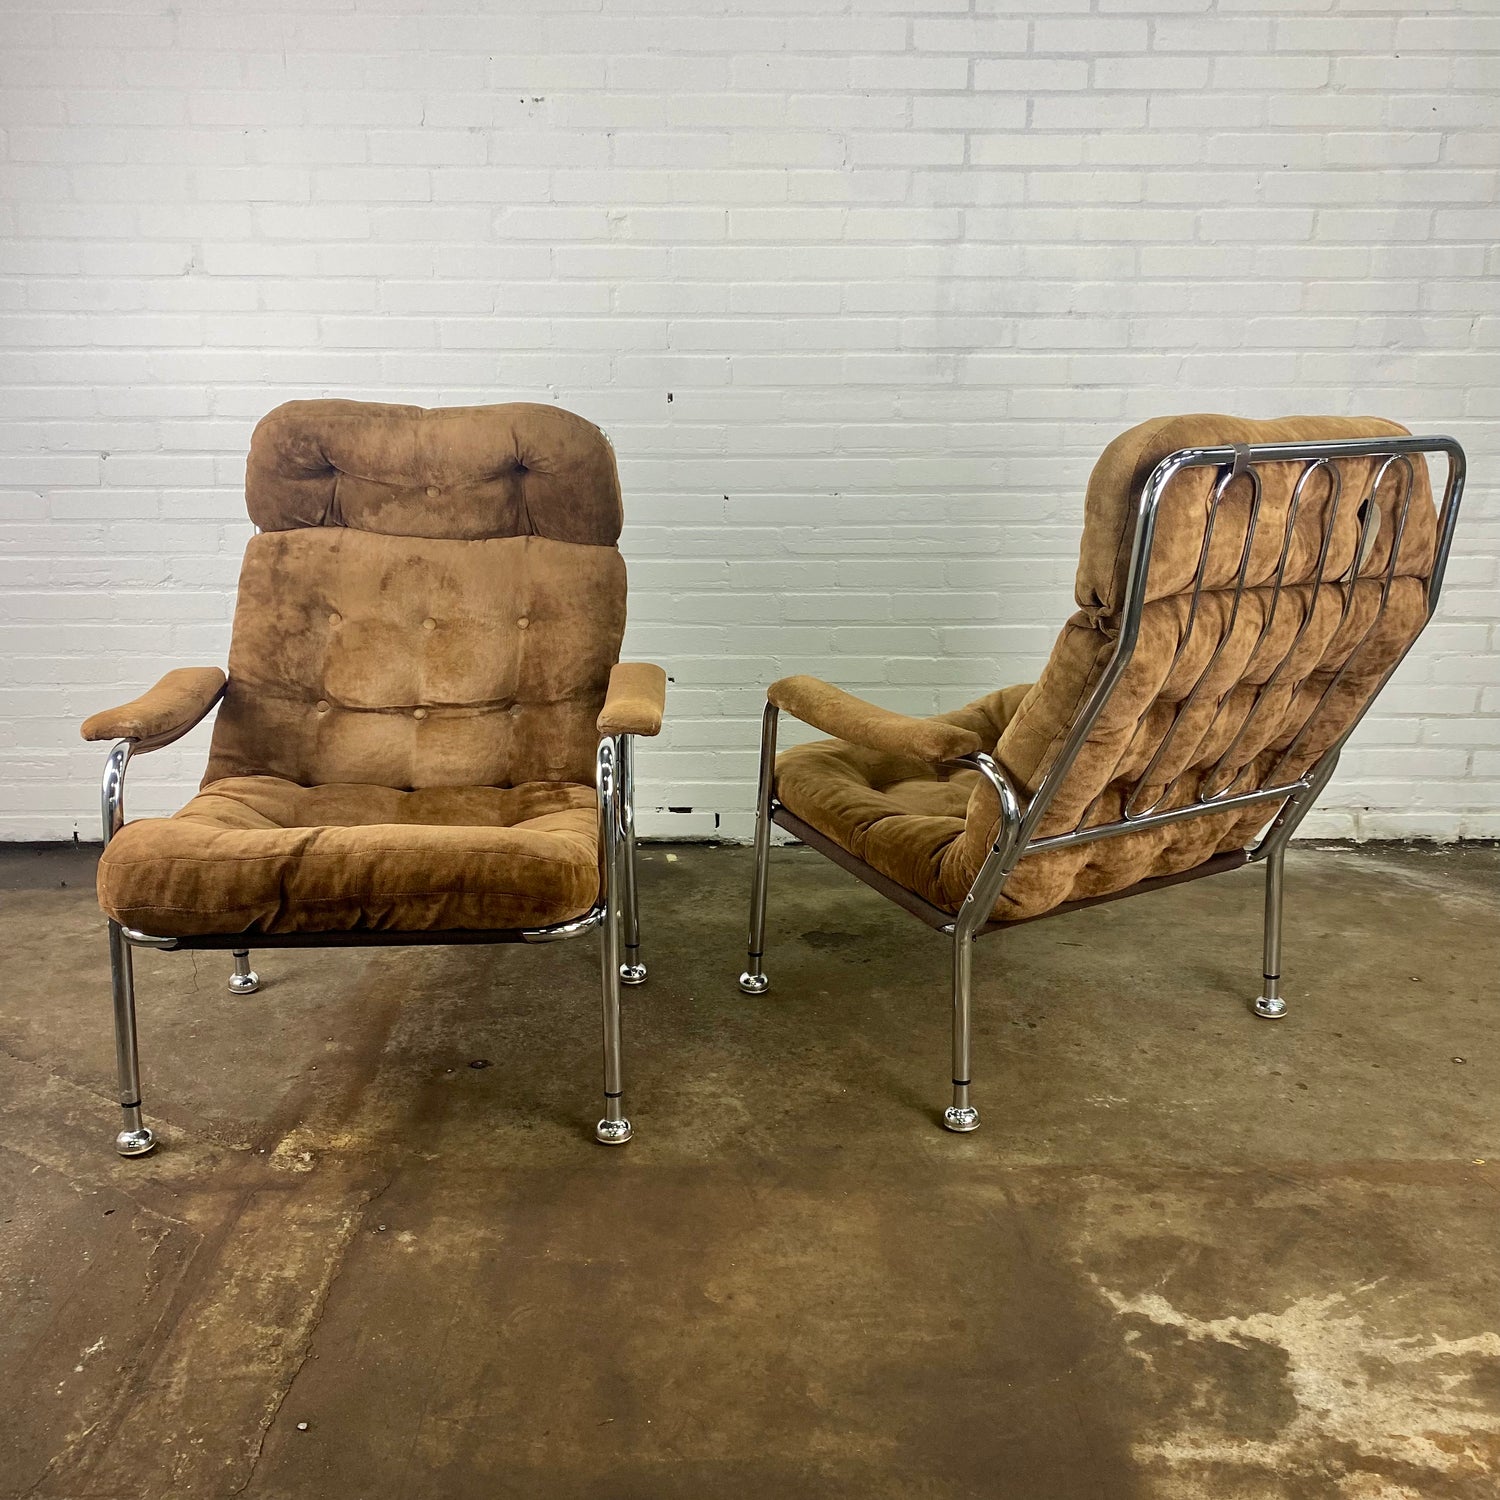 Toegepast Afleiding bestellen Vintage buisframe fauteuil / lounge chair met suede stof – Wintage